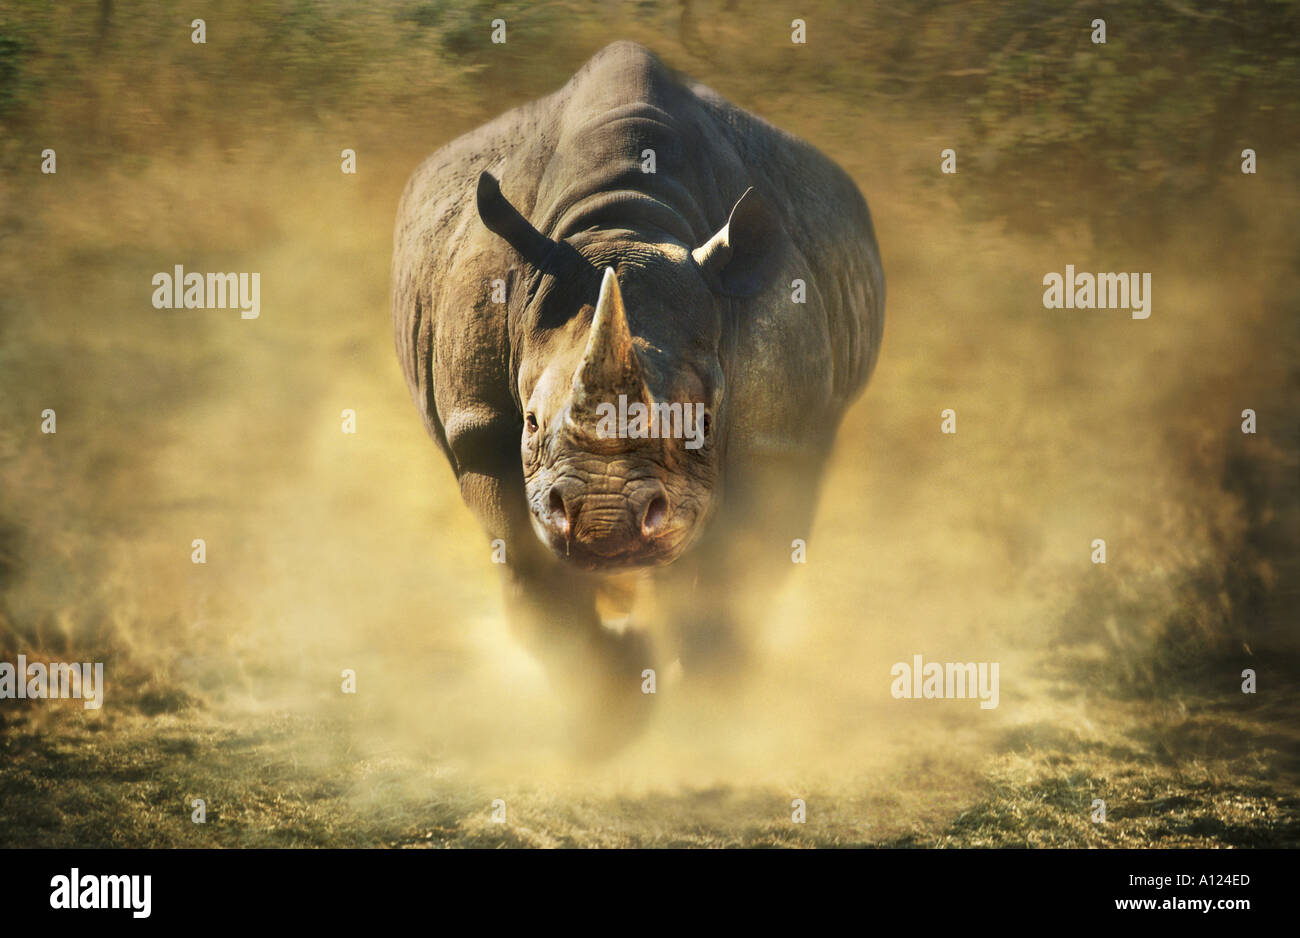 charging-black-rhinoceros-A124ED.jpg